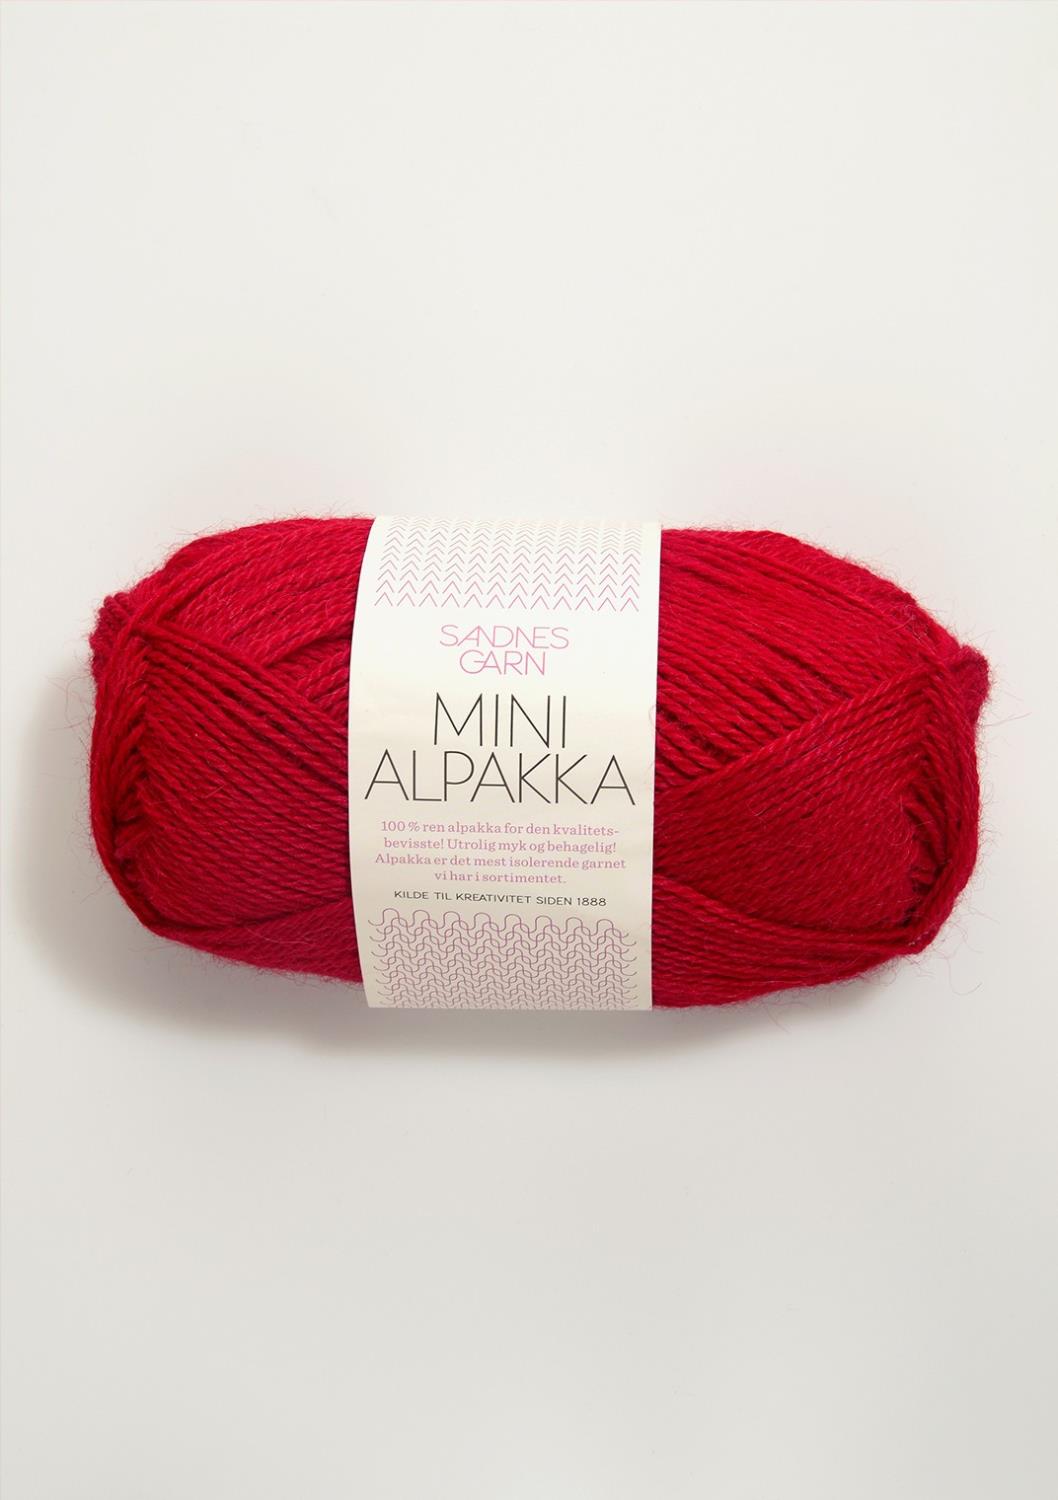 Mini Alpakka Sandnes 4219 - Rød